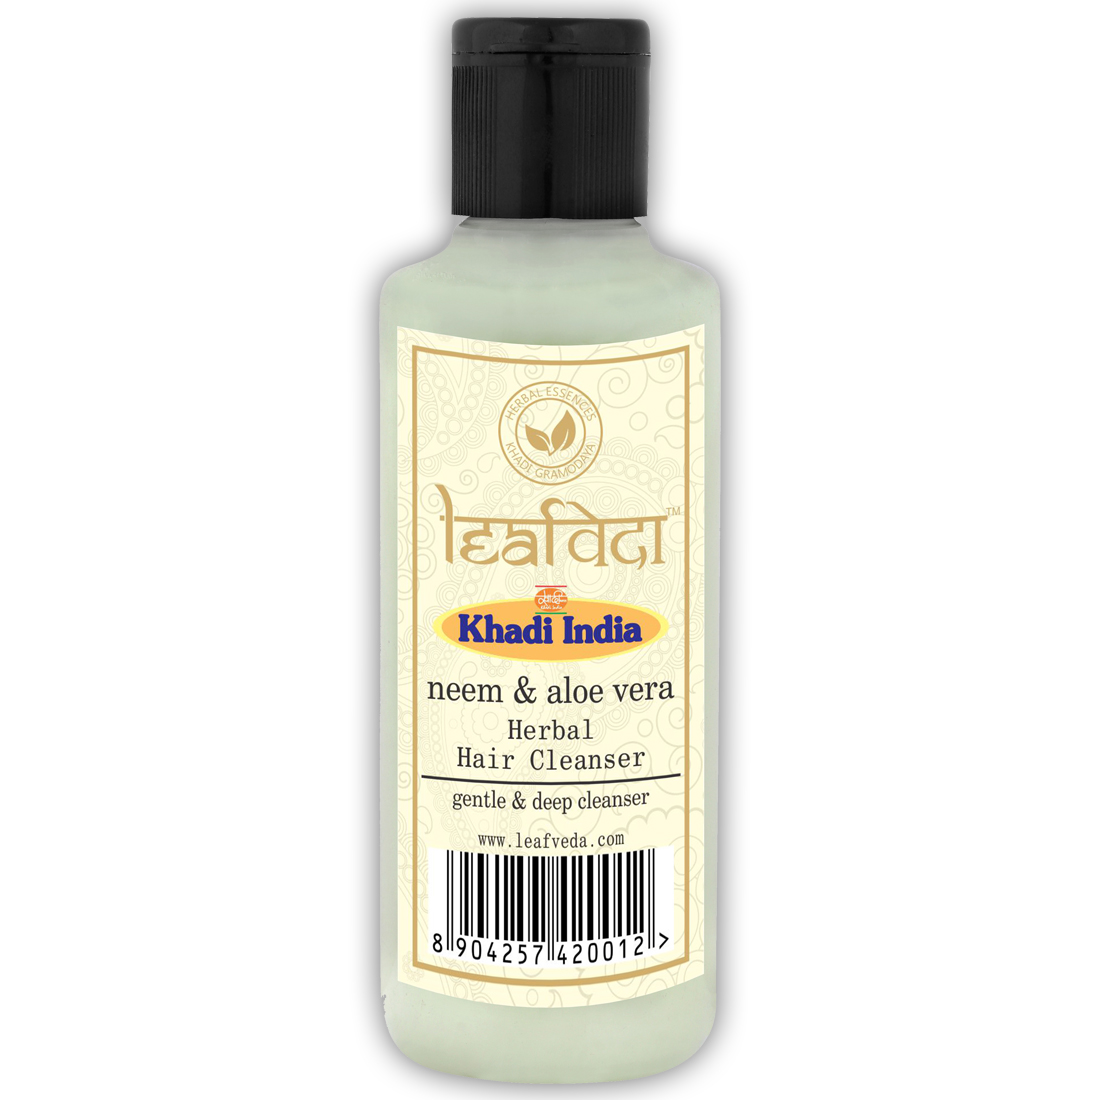 Buy Khadi Leafveda Neem & Aloe Vera Herbal Hair Cleanser at Best Price Online